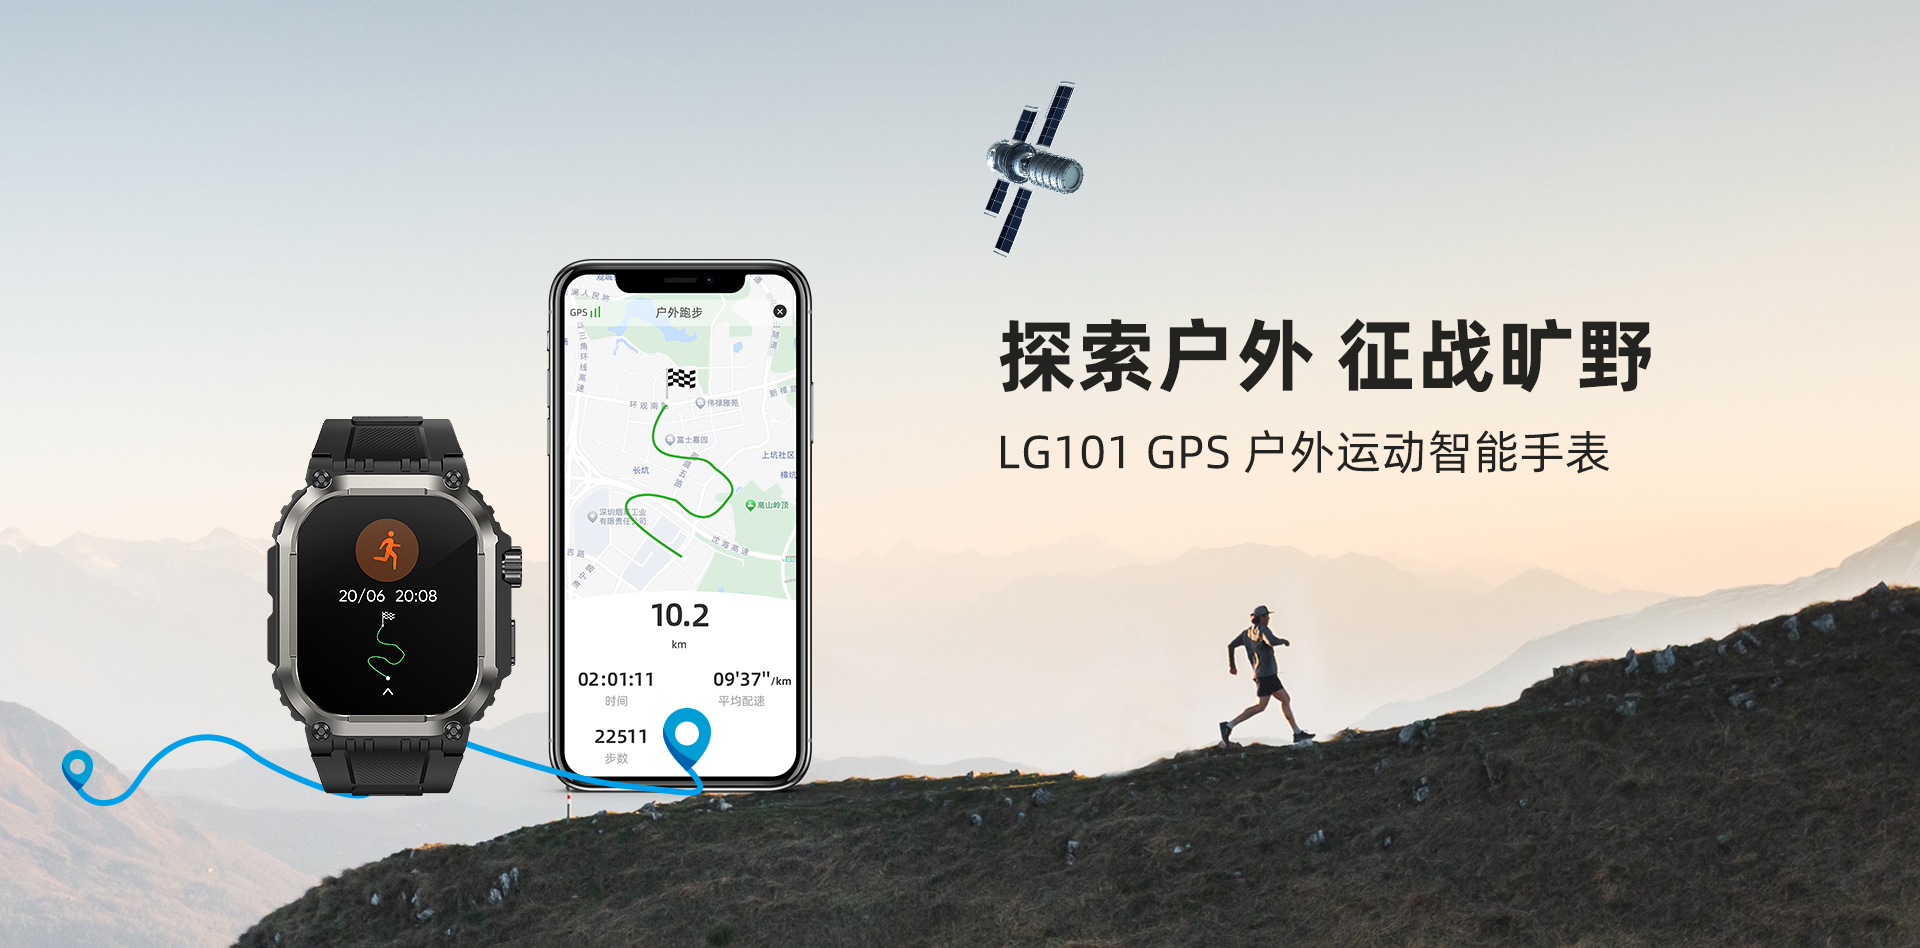 GPS导航
户外运动风